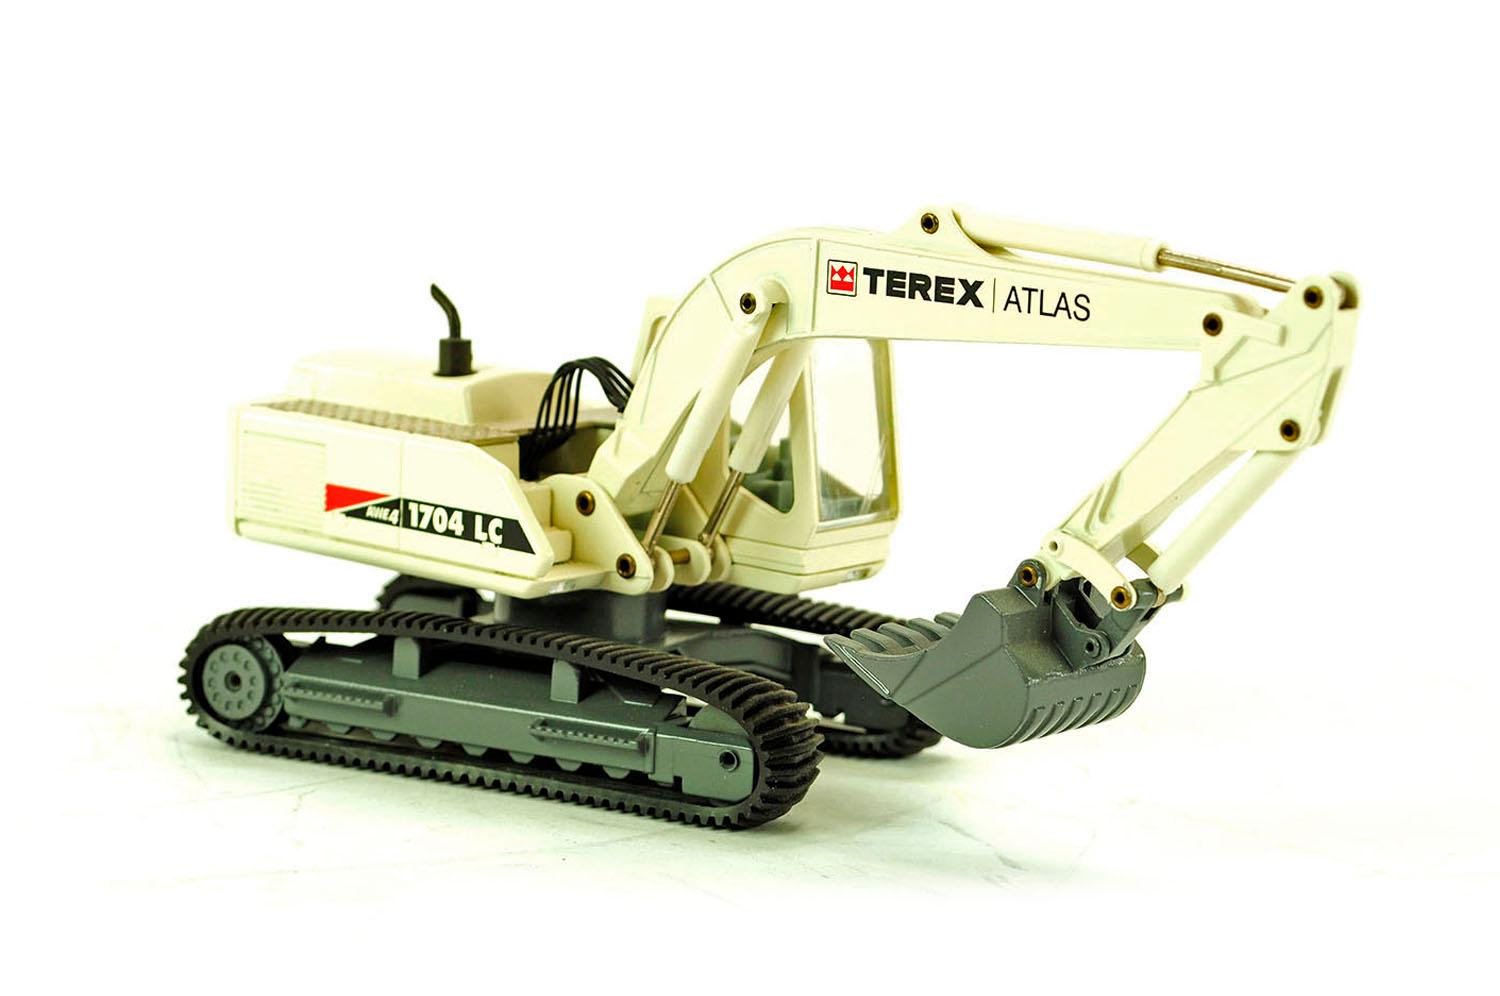 Terex Atlas 1704LC Tracked Excavator